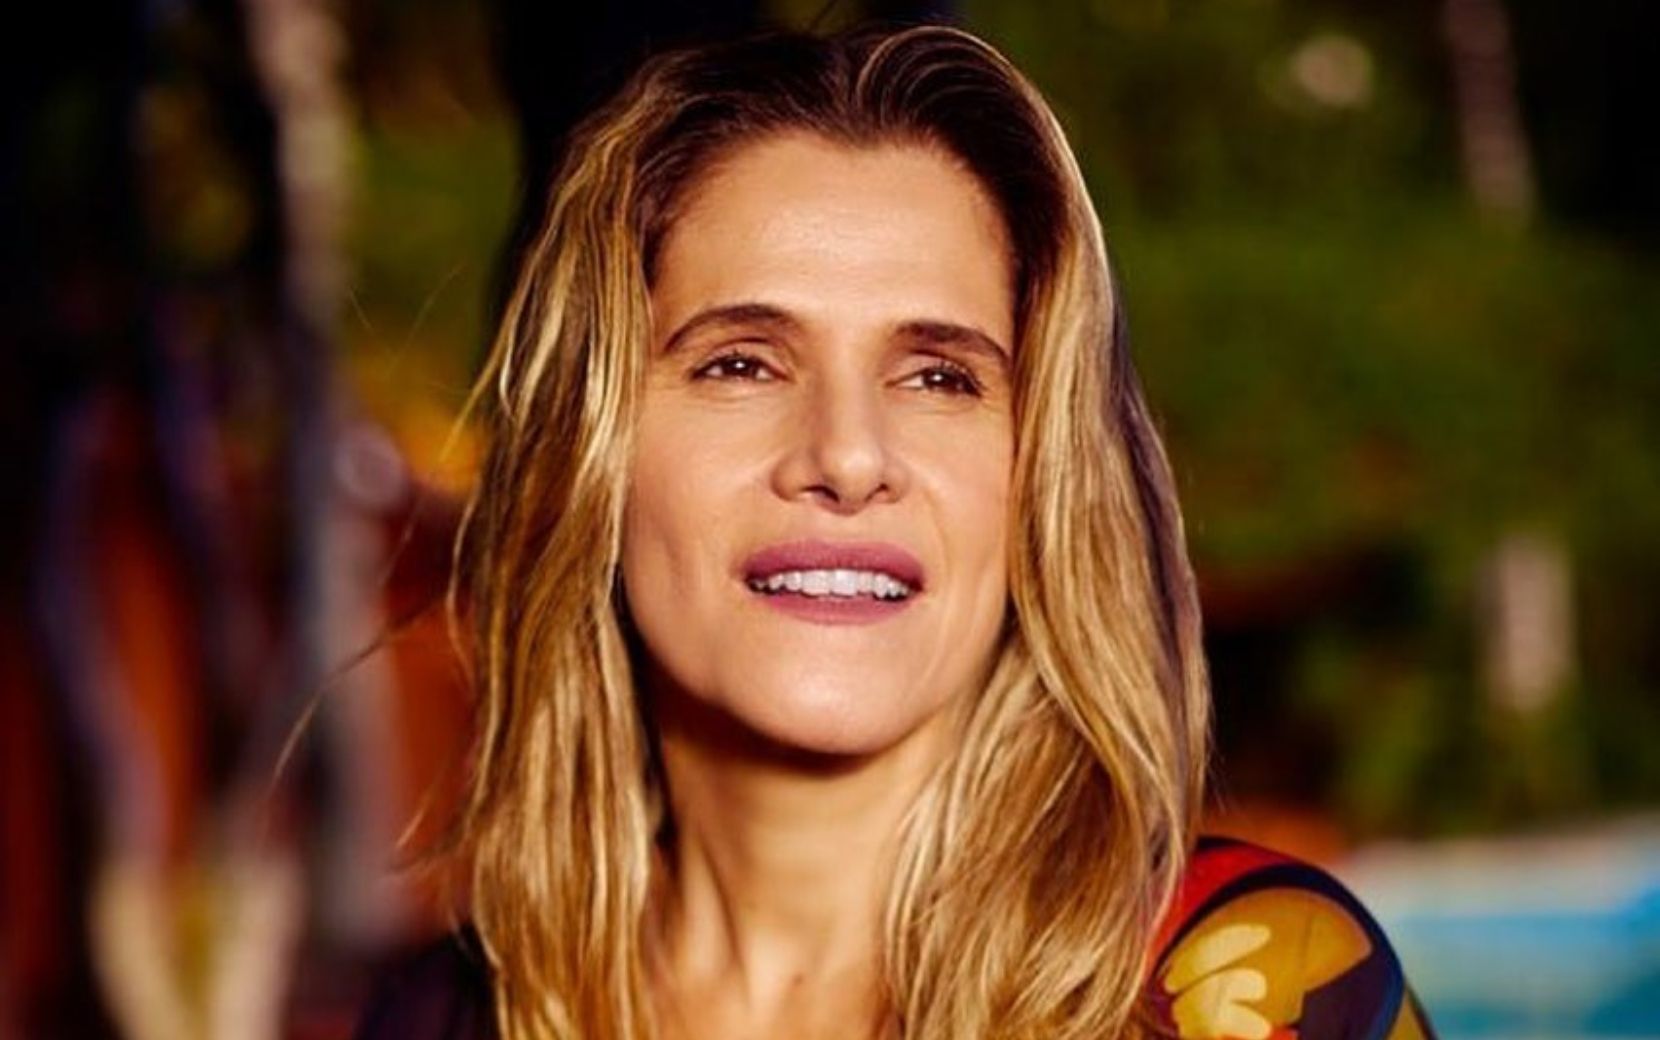 Ingrid Guimarães cita "A Fazenda" durante dinâmica no BBB21 e leva bronca da produção